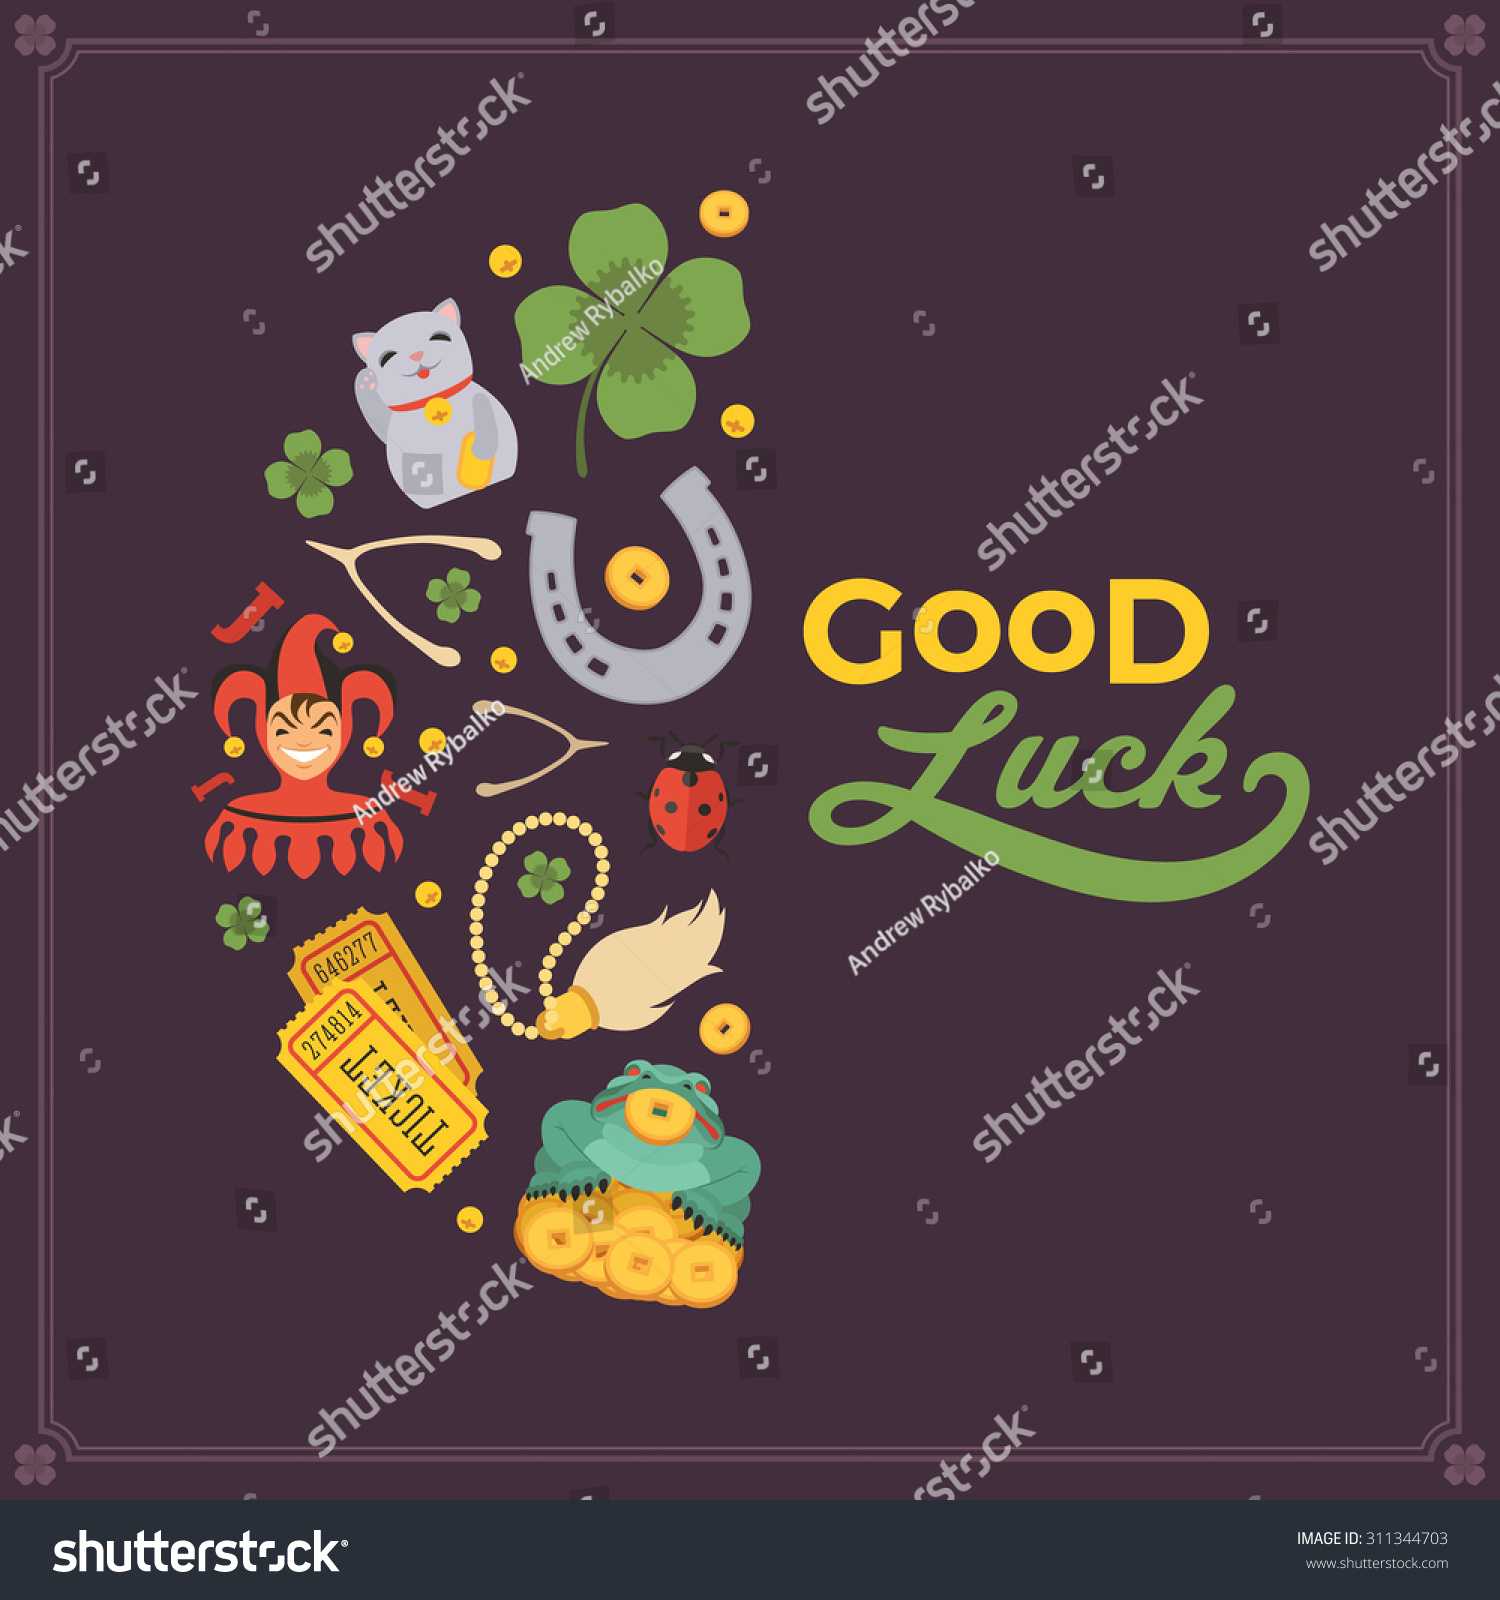 Good Luck Card Template ] – Doc 585586 Good Luck Card Intended For Good Luck Card Template